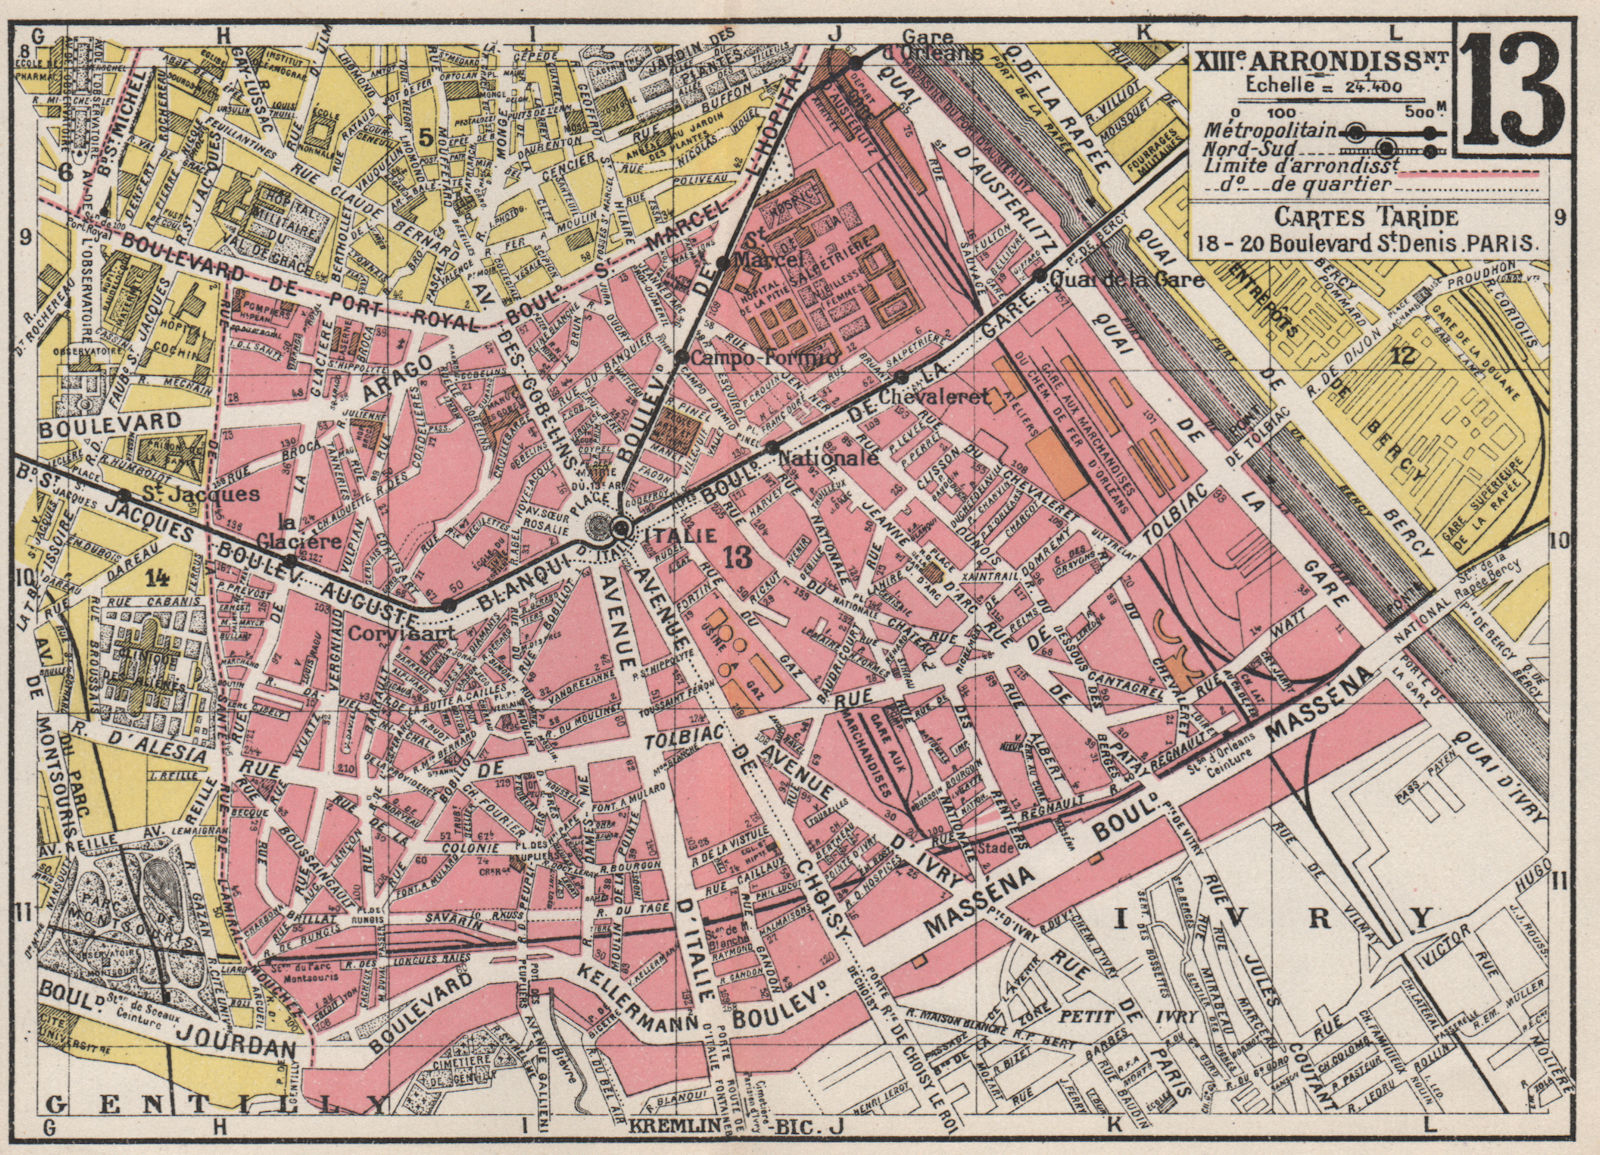 PARIS. 13th 13e XIIIe. Arrondissement. Gobelins. TARIDE 1926 old vintage map